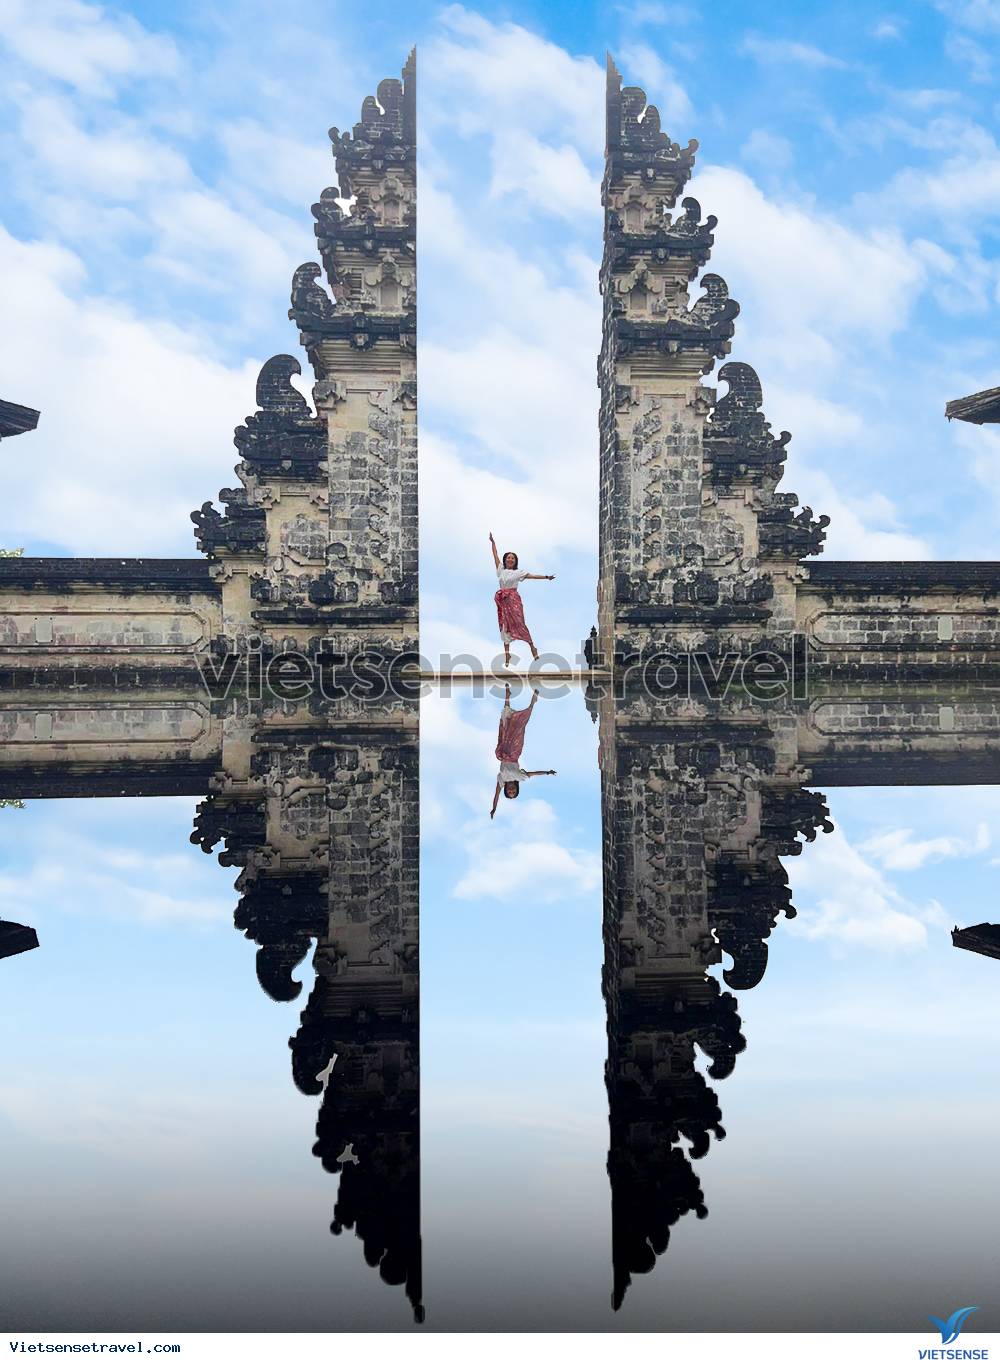 Đáp án cho câu hỏi đi du lịch Bali mùa nào đẹp nhất